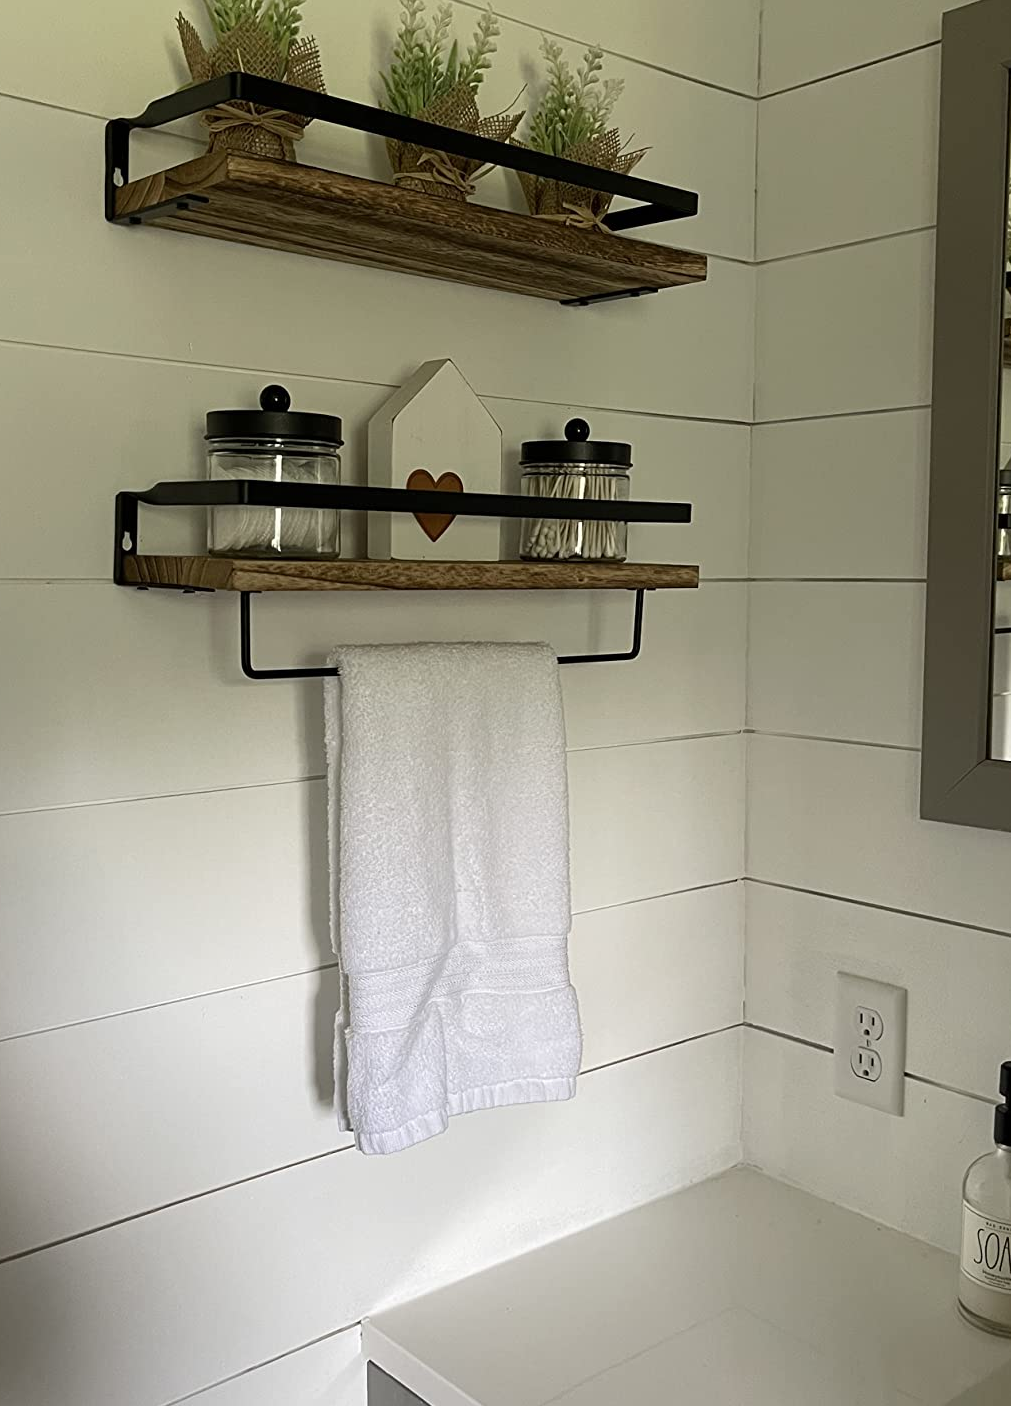 Repisa para baño  Wooden bathroom shelves, Hanging bathroom shelves,  Floating shelves diy